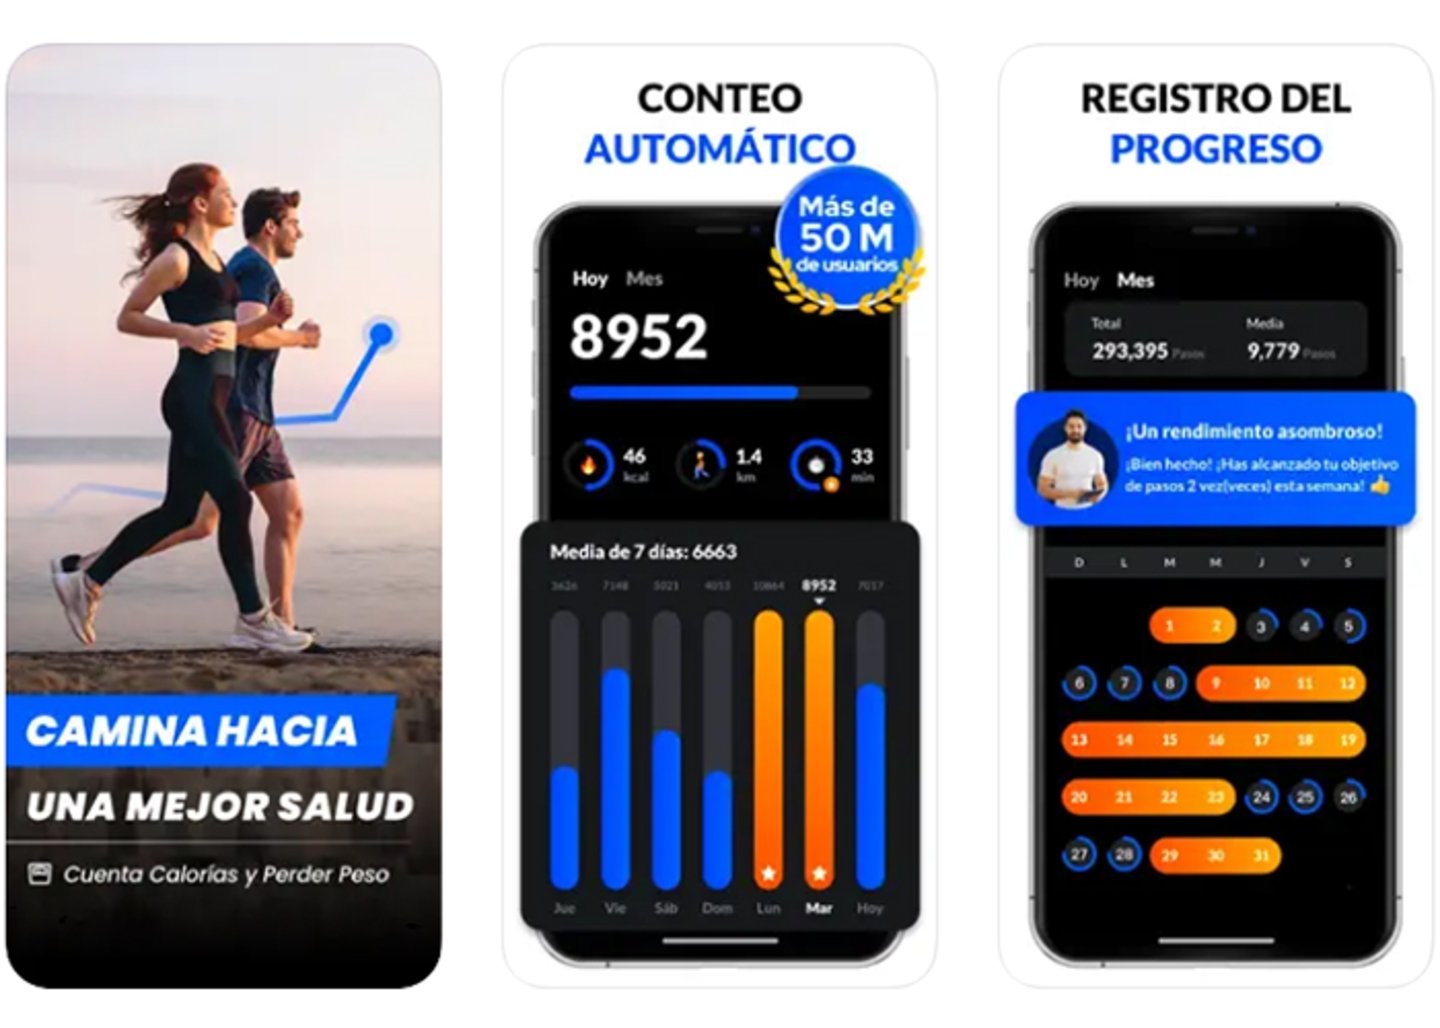 Las Mejores Apps Gratis para Contar Pasos en iPhone – ActivityTracker